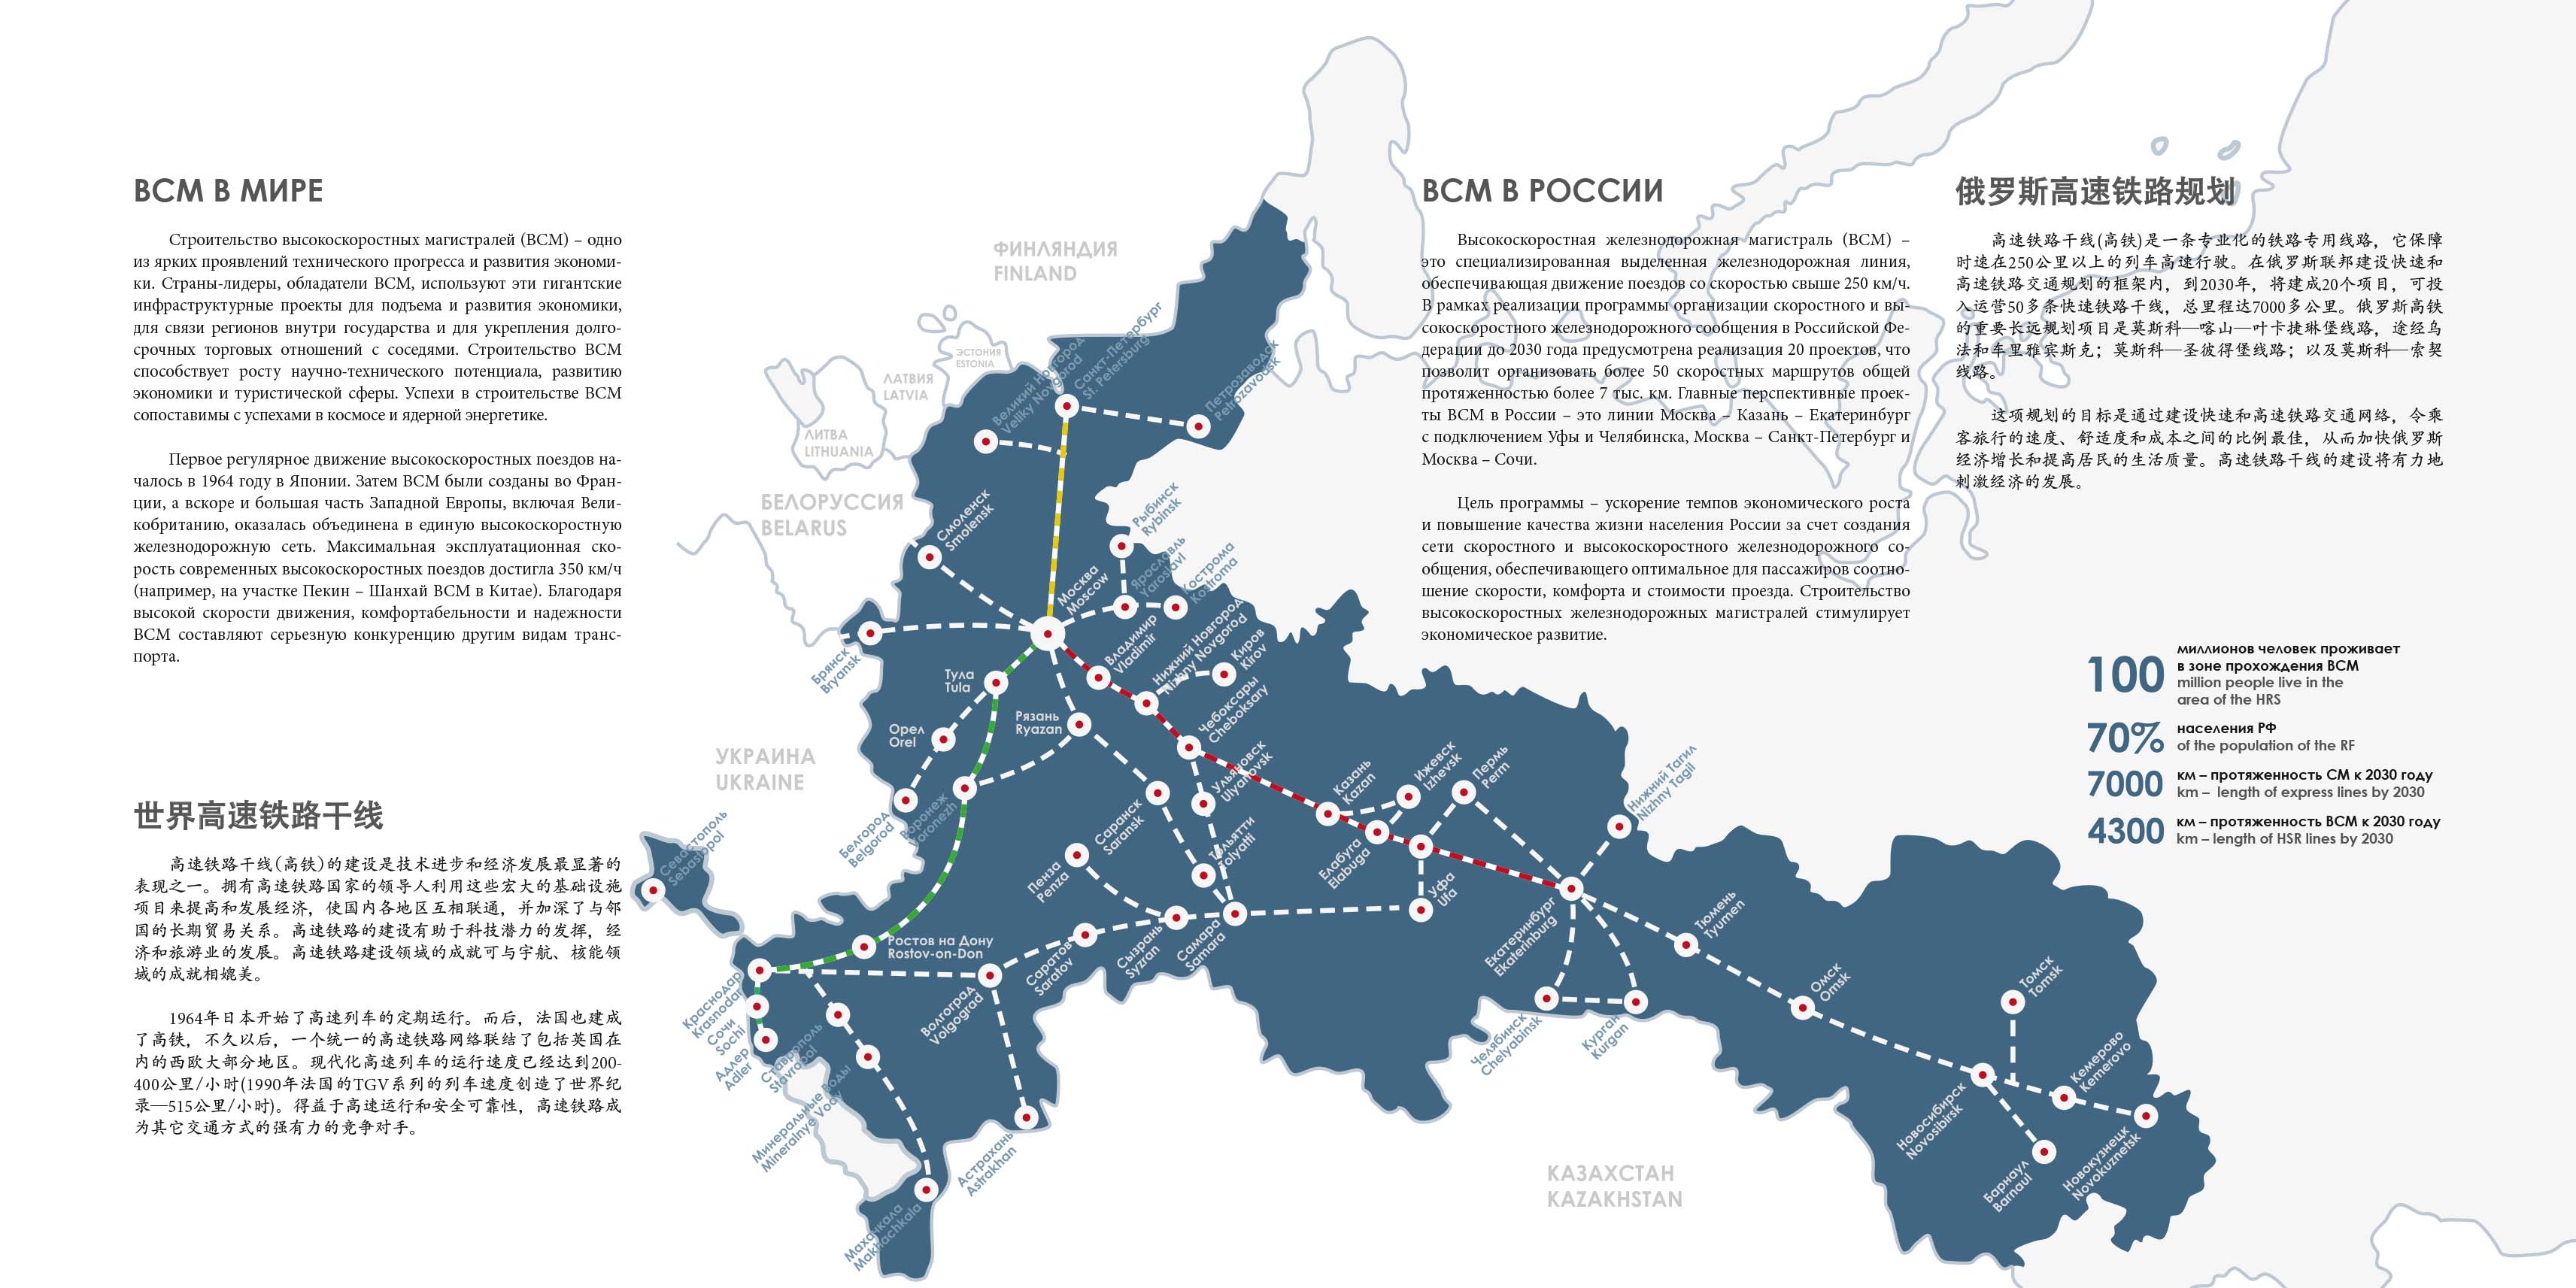 Мрот до 2030 года. Карта высокоскоростных магистралей в России. Сеть высокоскоростных железных дорог в России. Карта железных дорог России до 2030 года. План развития железных дорог России до 2030 года карта.